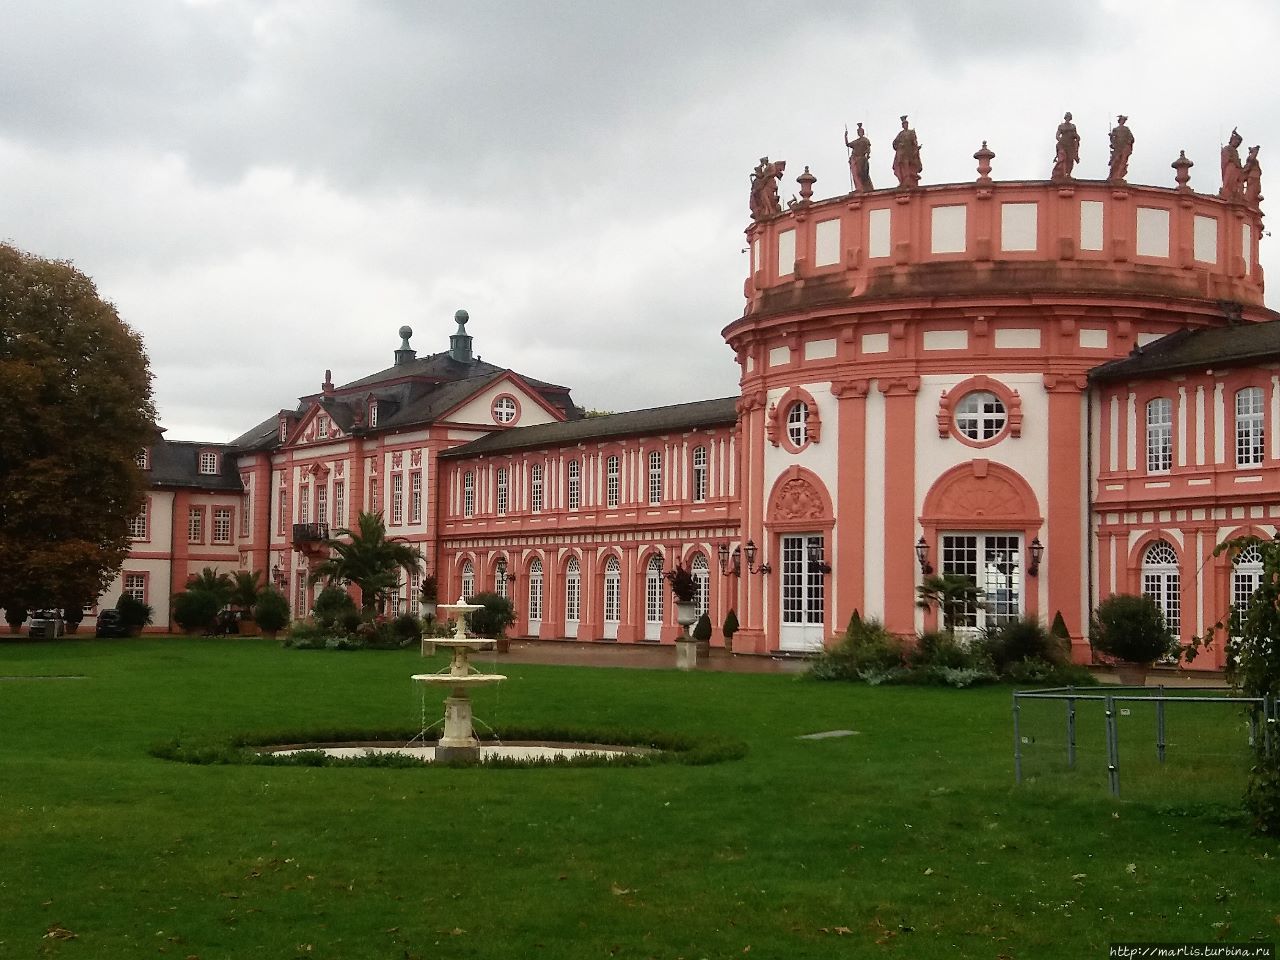 Ландшафтный парк и дворец Бибрих Висбаден, Германия